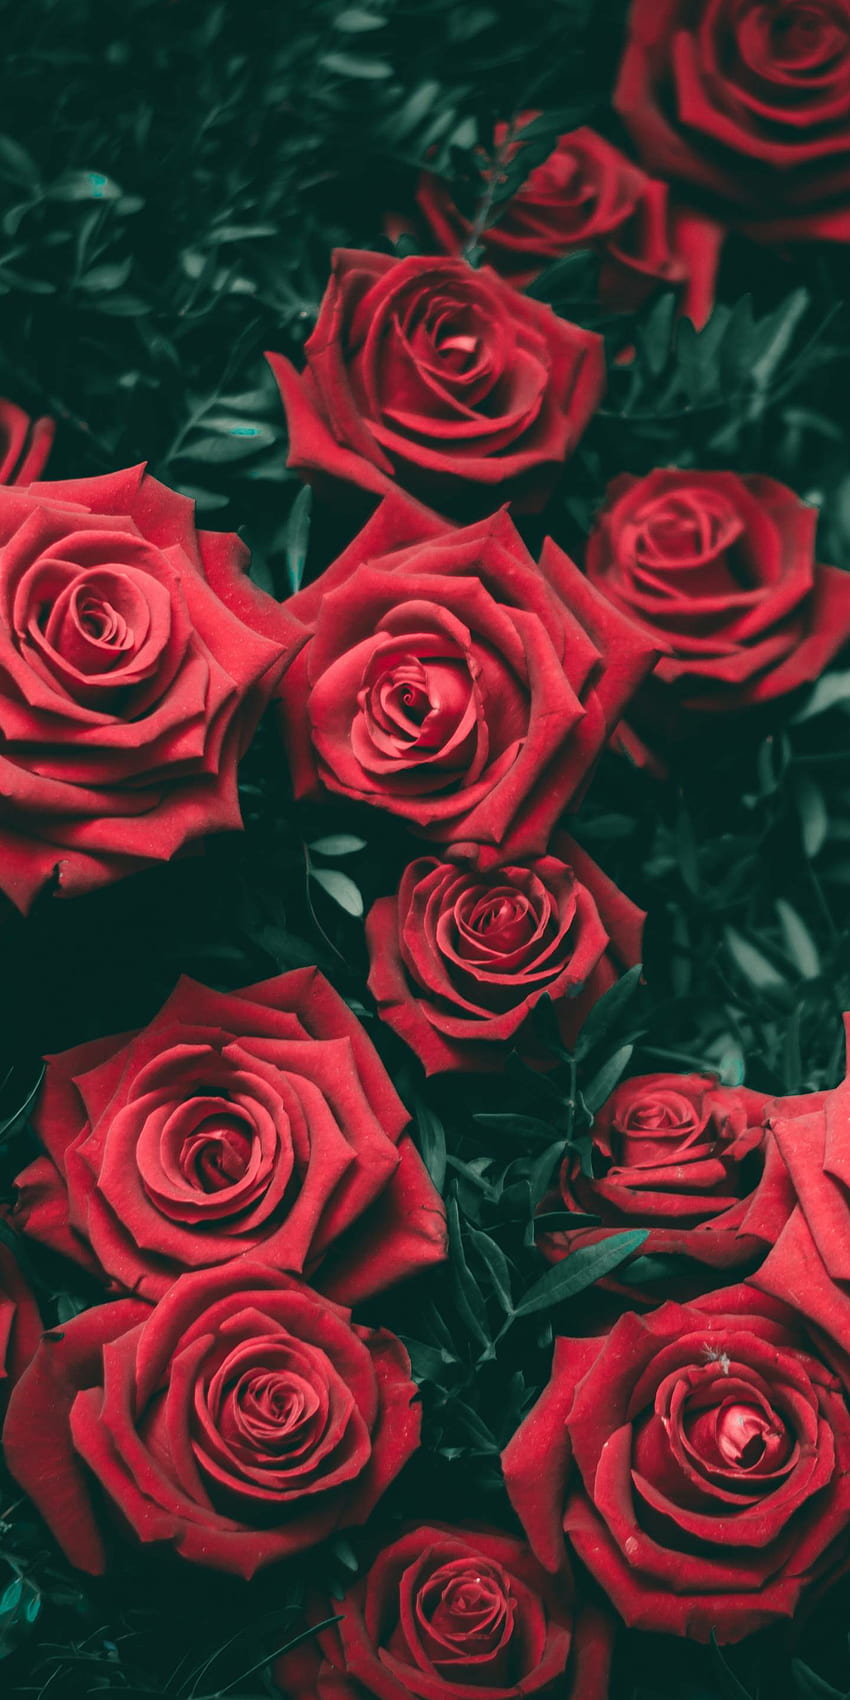 Làm mới màn hình điện thoại của bạn với hình nền hoa hồng đỏ đẹp mắt đang được ưa chuộng trong thế giới đ aesthetic. Họa tiết tinh tế và gam màu ấm áp sẽ đem lại cho bạn cảm giác dịu dàng và sự phấn khích mỗi khi bắt đầu một ngày mới.